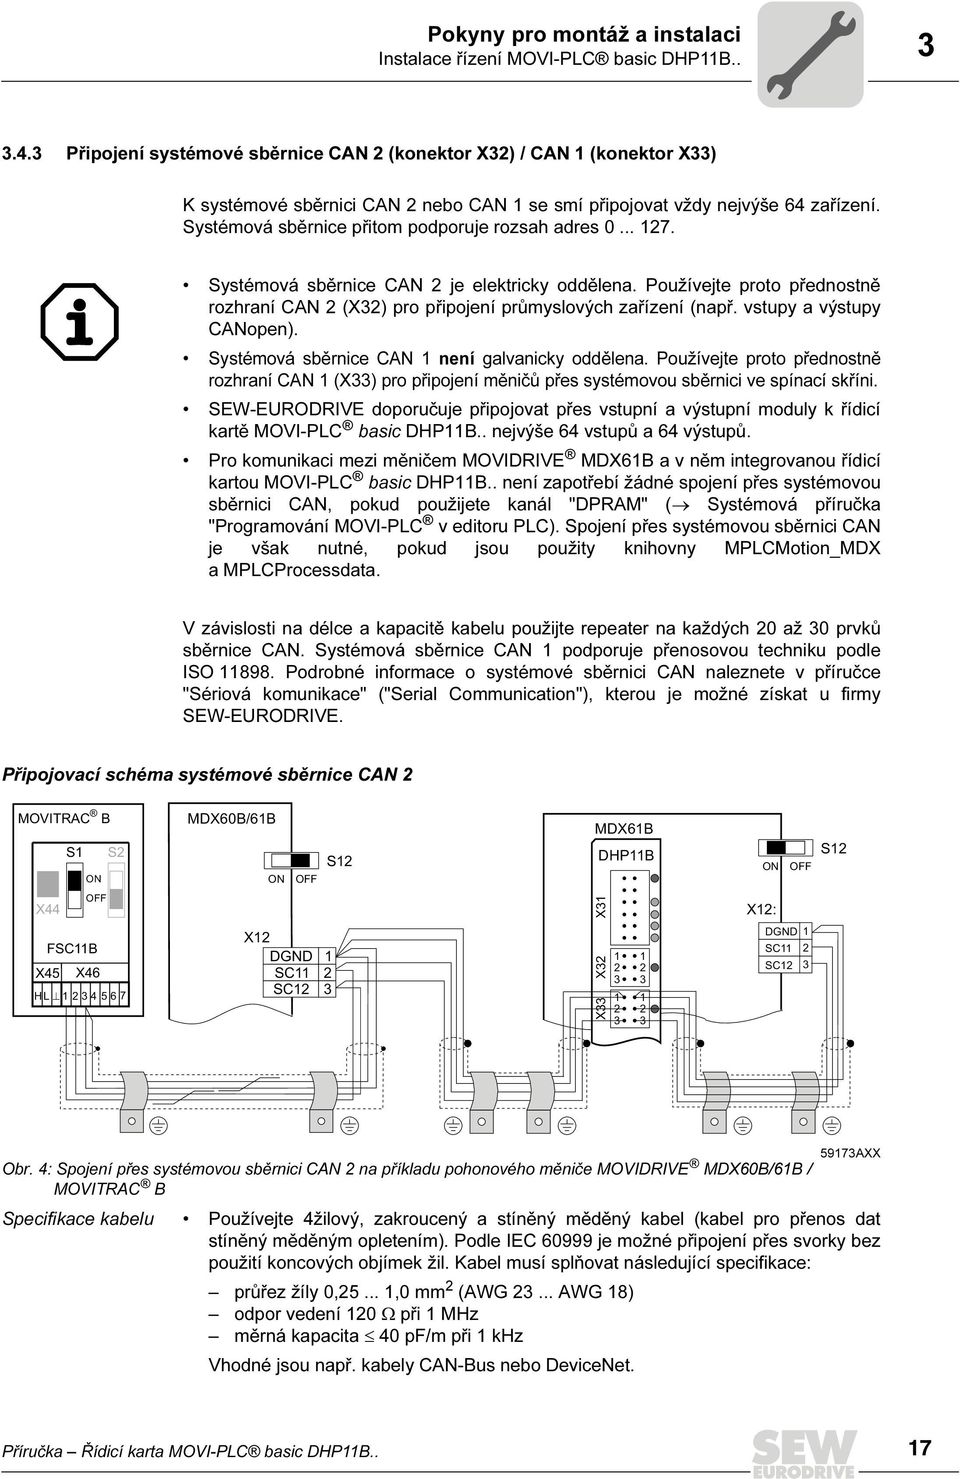 Systémová sběrnice CAN je elektricky oddělena. Používejte proto přednostně rozhraní CAN (X) pro připojení průmyslových zařízení (např. vstupy a výstupy CANopen).